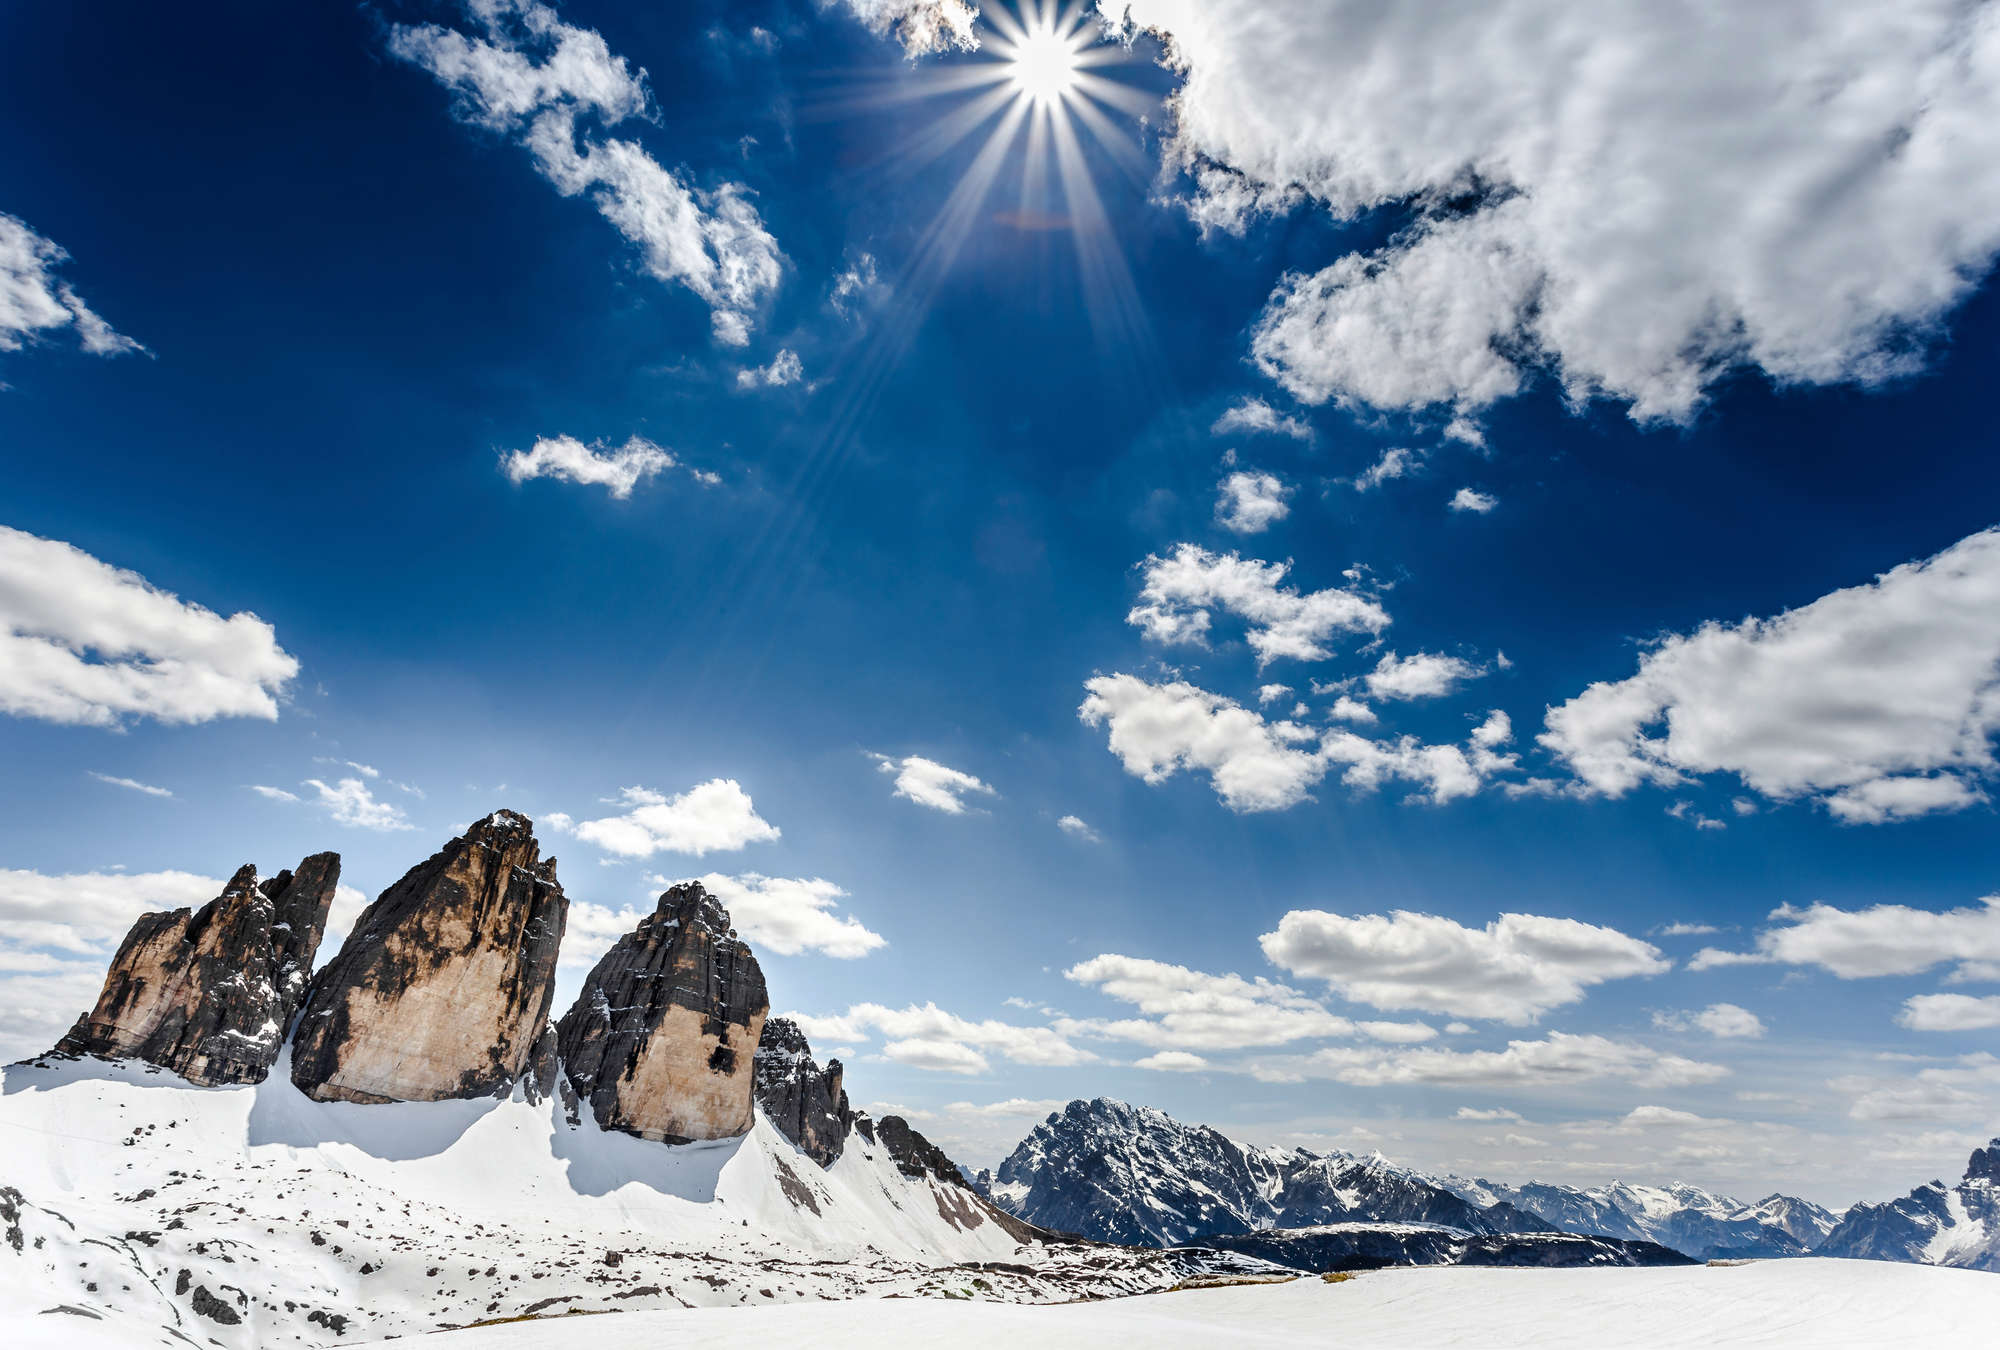             Fototapete Bergwinterlandschaft mit Blick auf die Drei Zinnen
        